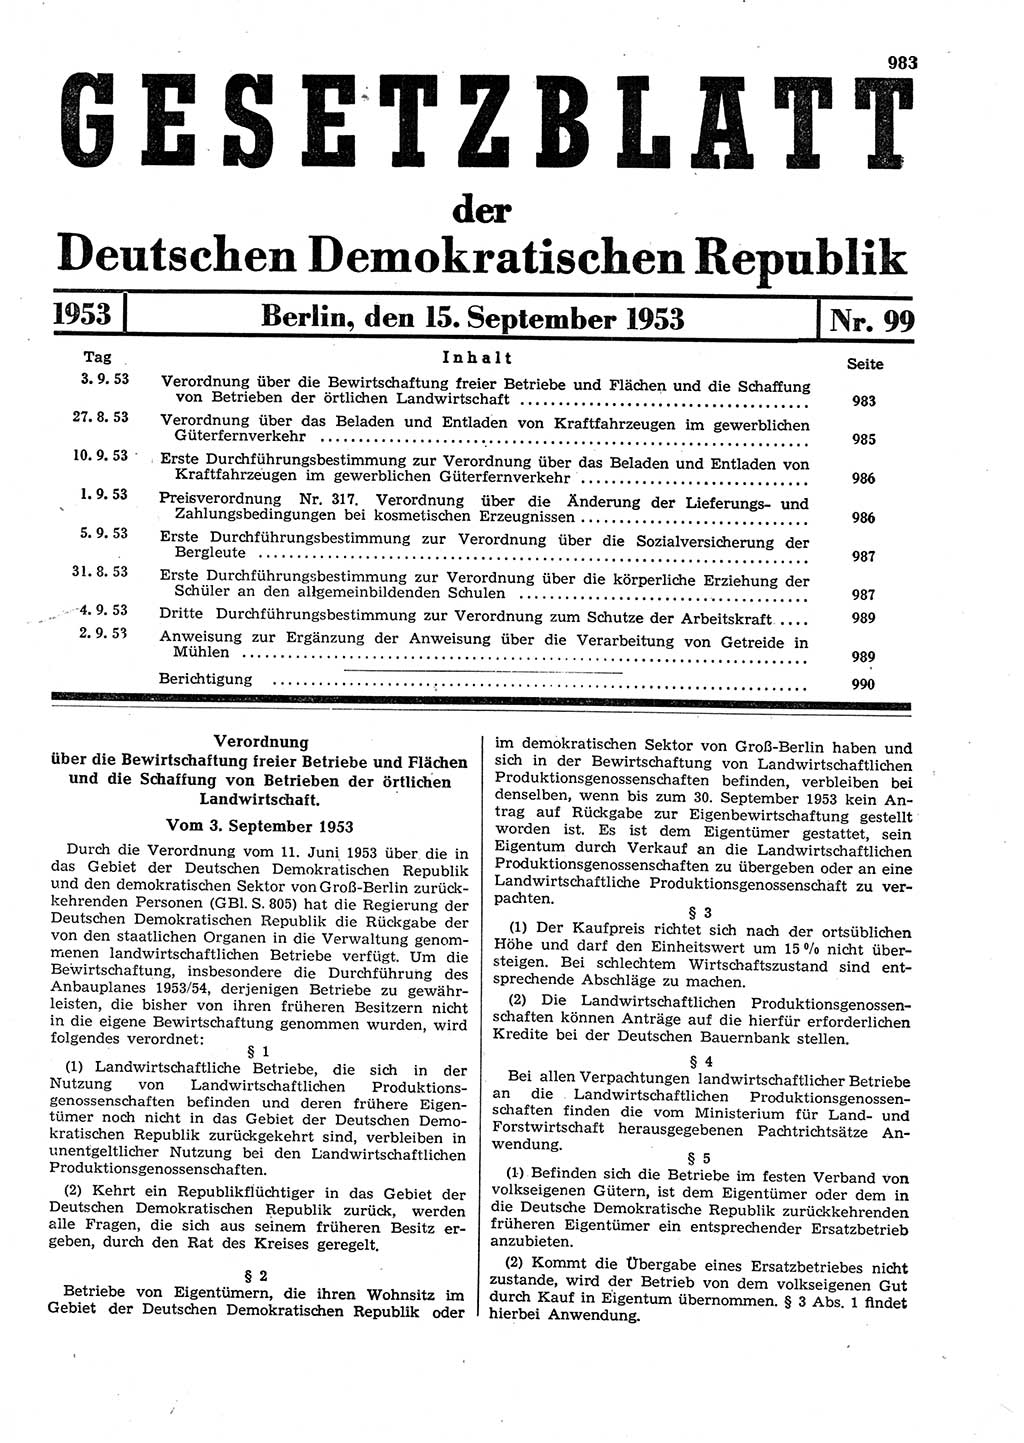 Gesetzblatt (GBl.) der Deutschen Demokratischen Republik (DDR) 1953, Seite 983 (GBl. DDR 1953, S. 983)